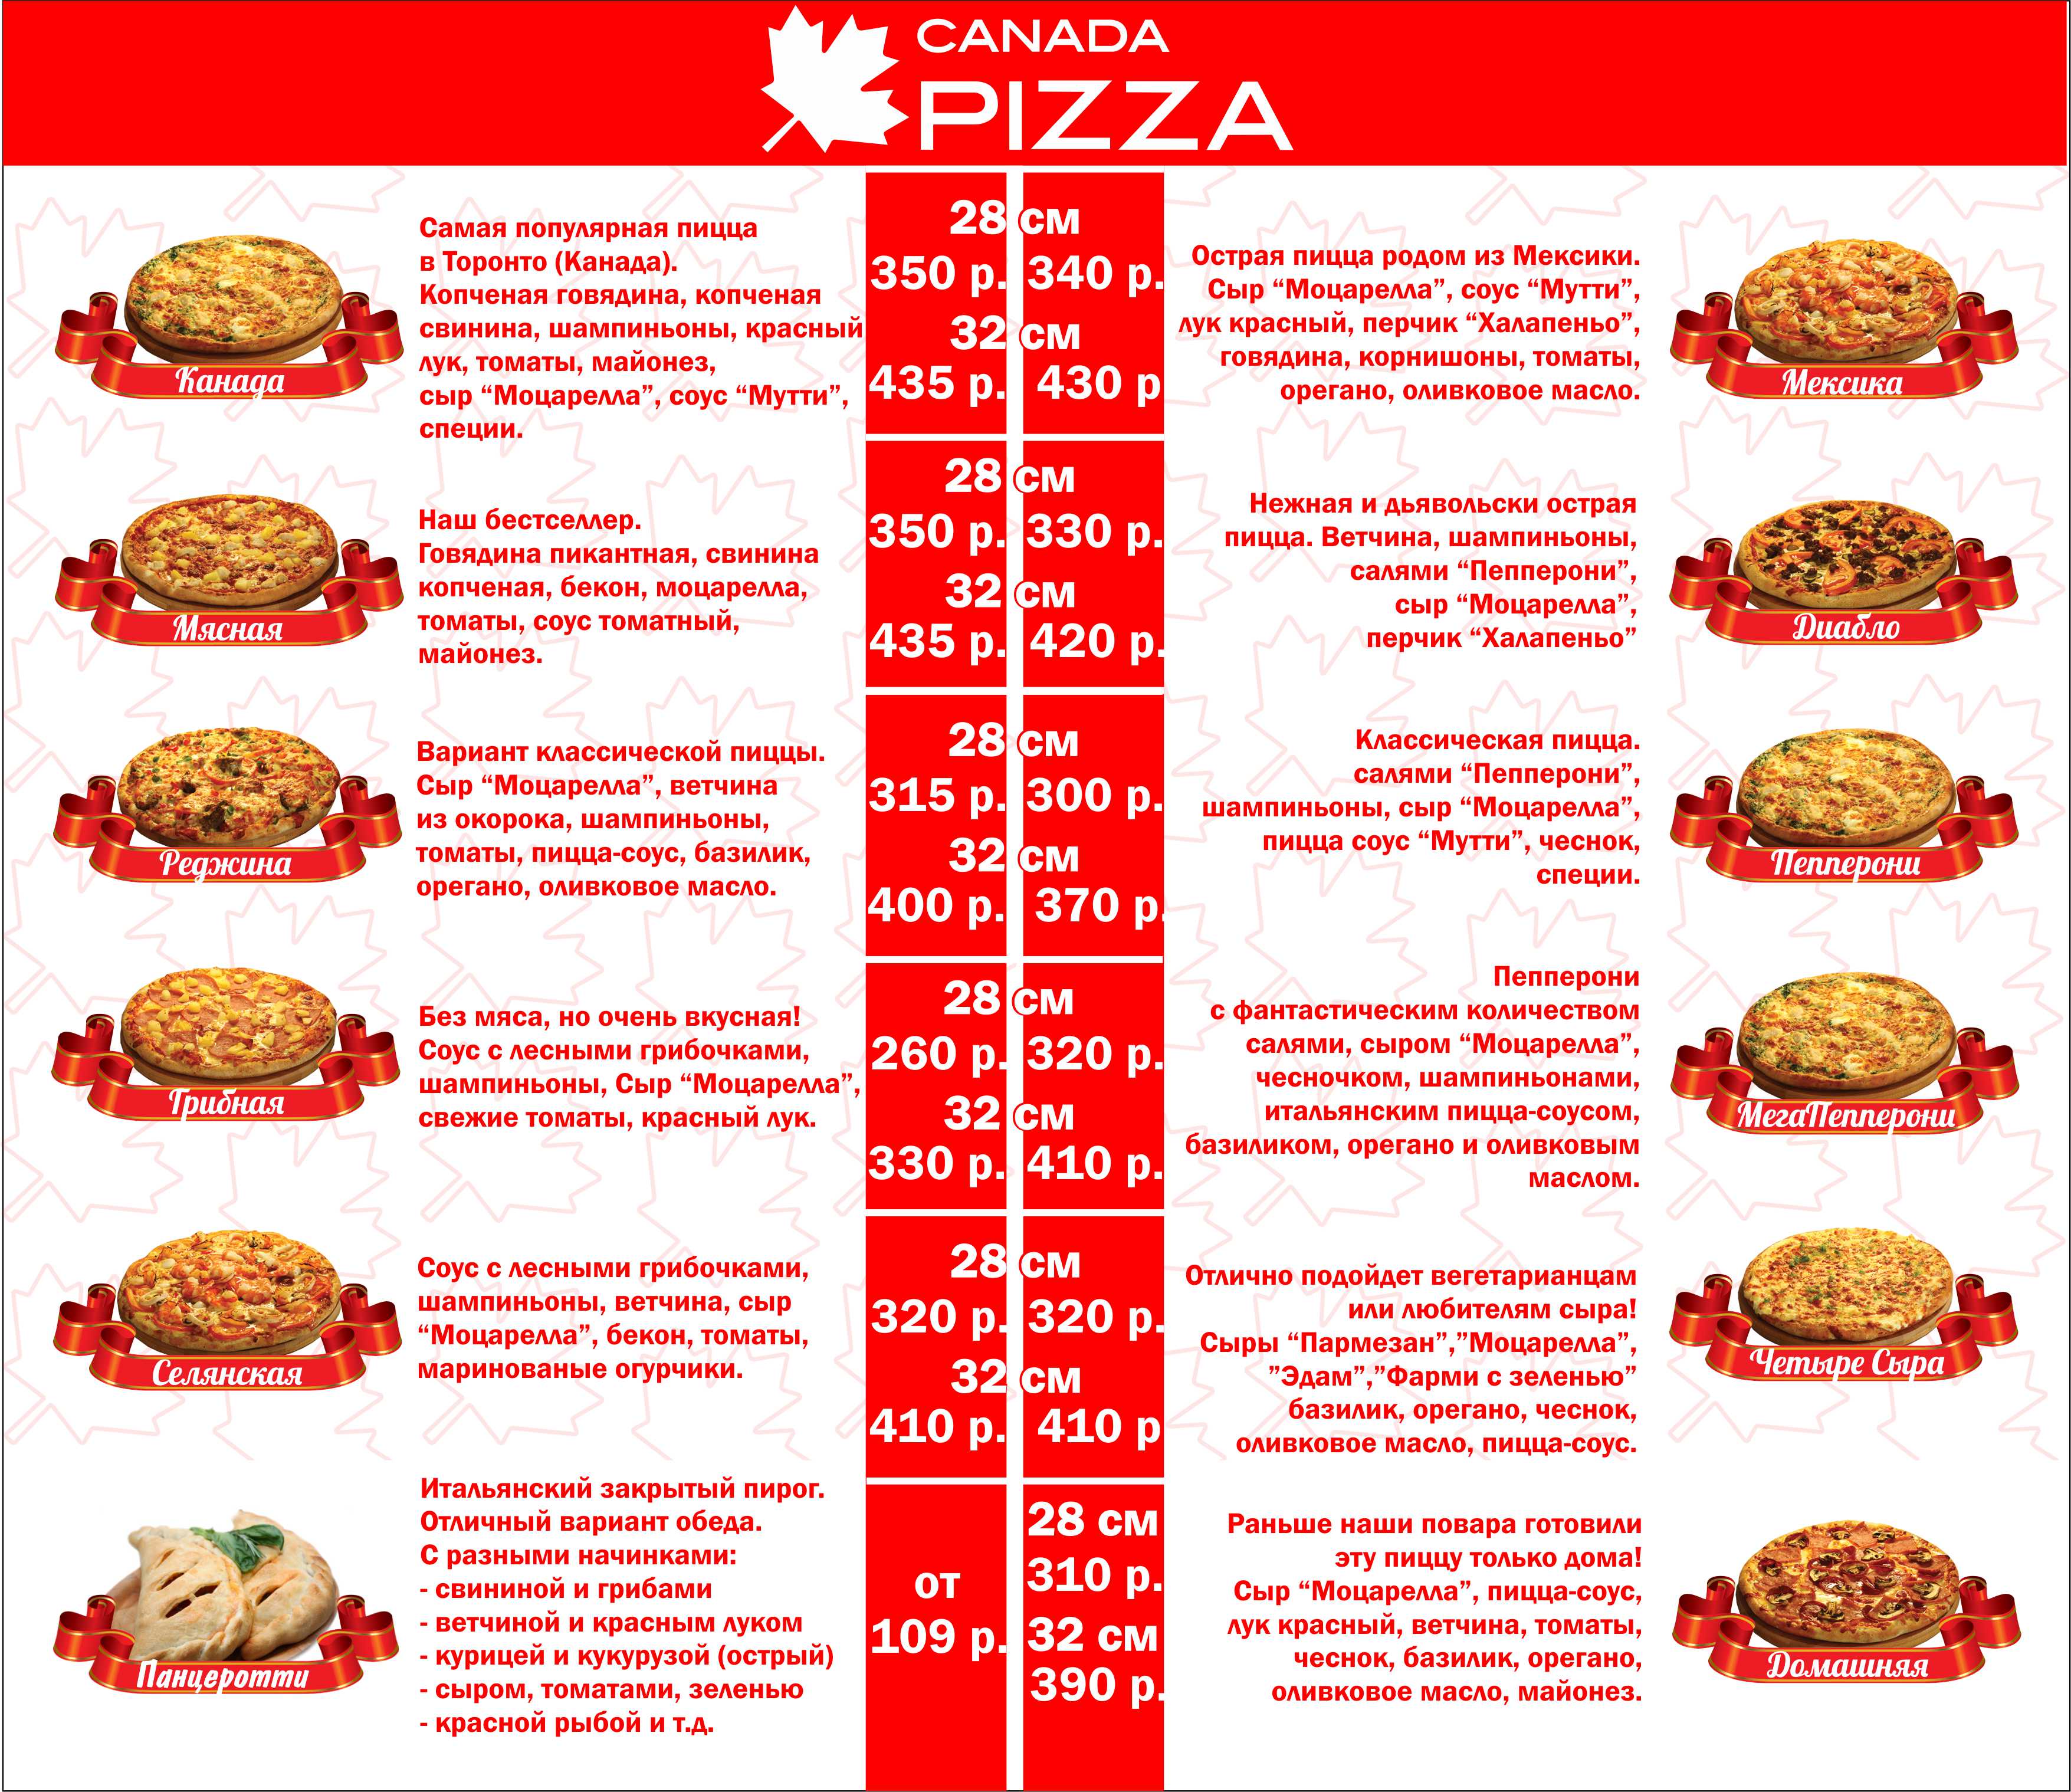 пиццы рецепты начинка с фото фото 19